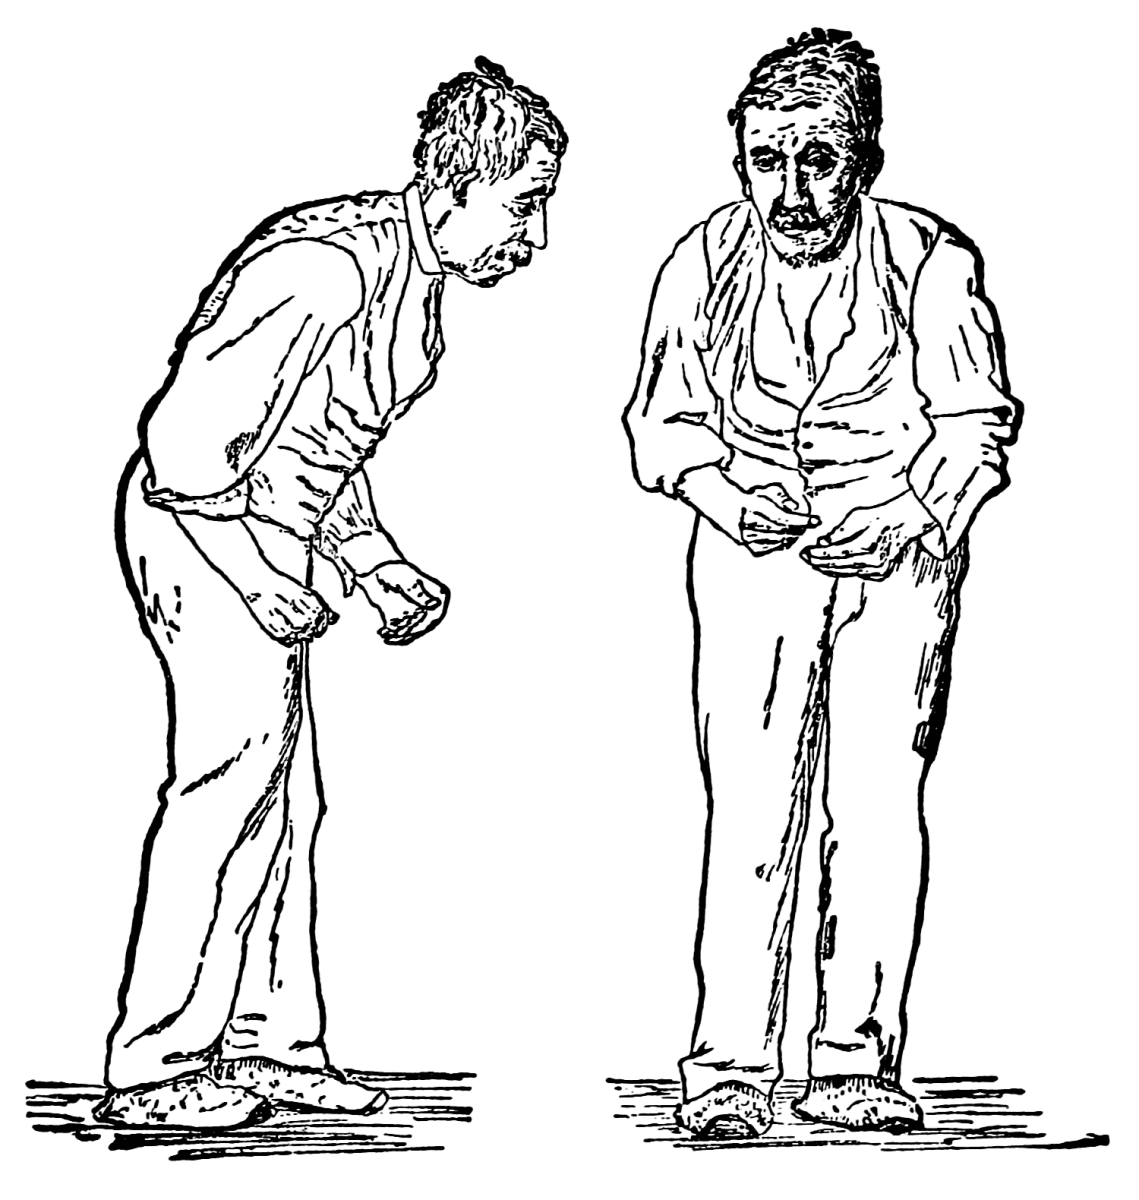 兩幅插畫分別由前面和右側描繪了罹患巴金森氏症患者，面無表情、彎腰駝背、舉步維艱。此圖為William Richard Gowers繪製，首見於其1886年出版的《神經系統疾病手冊》（A Manual of Diseases of the Nervous System）。（取自https://zh.wikipedia.org/w/index.php?curid=5458640）